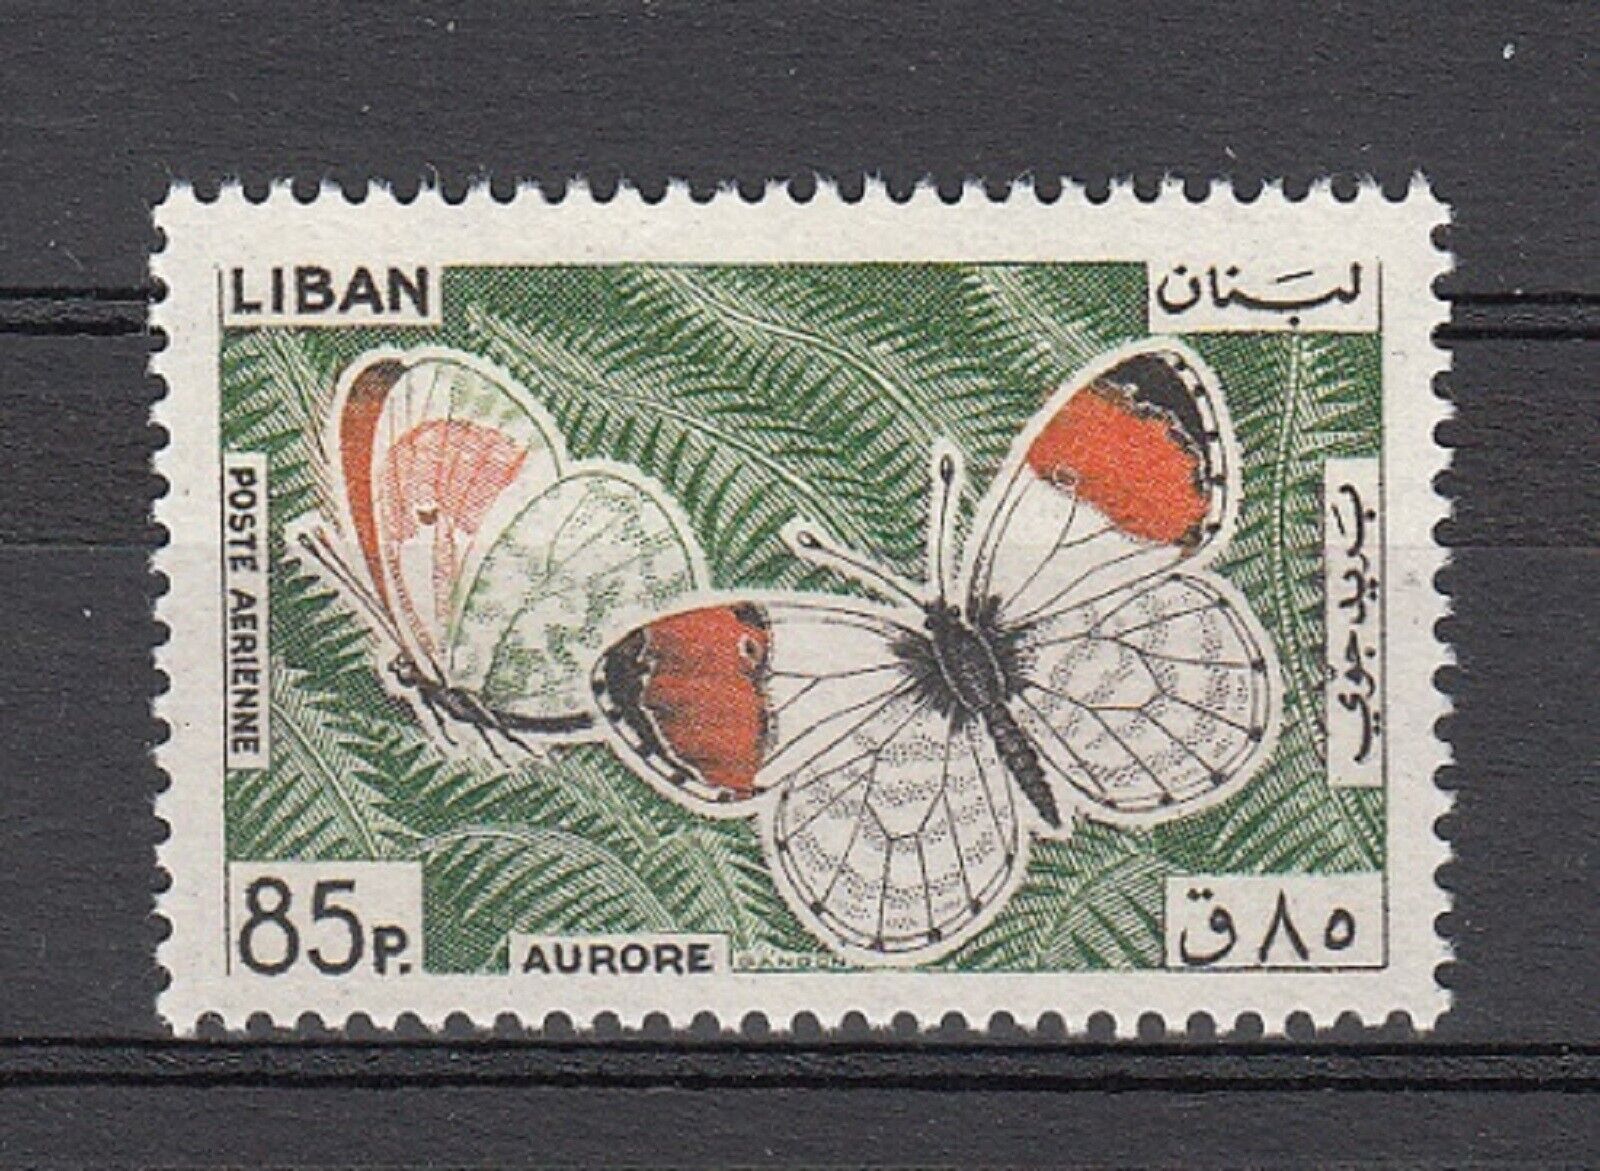 Lebanon - Liban Mnh - Sc# C432 Butterflies